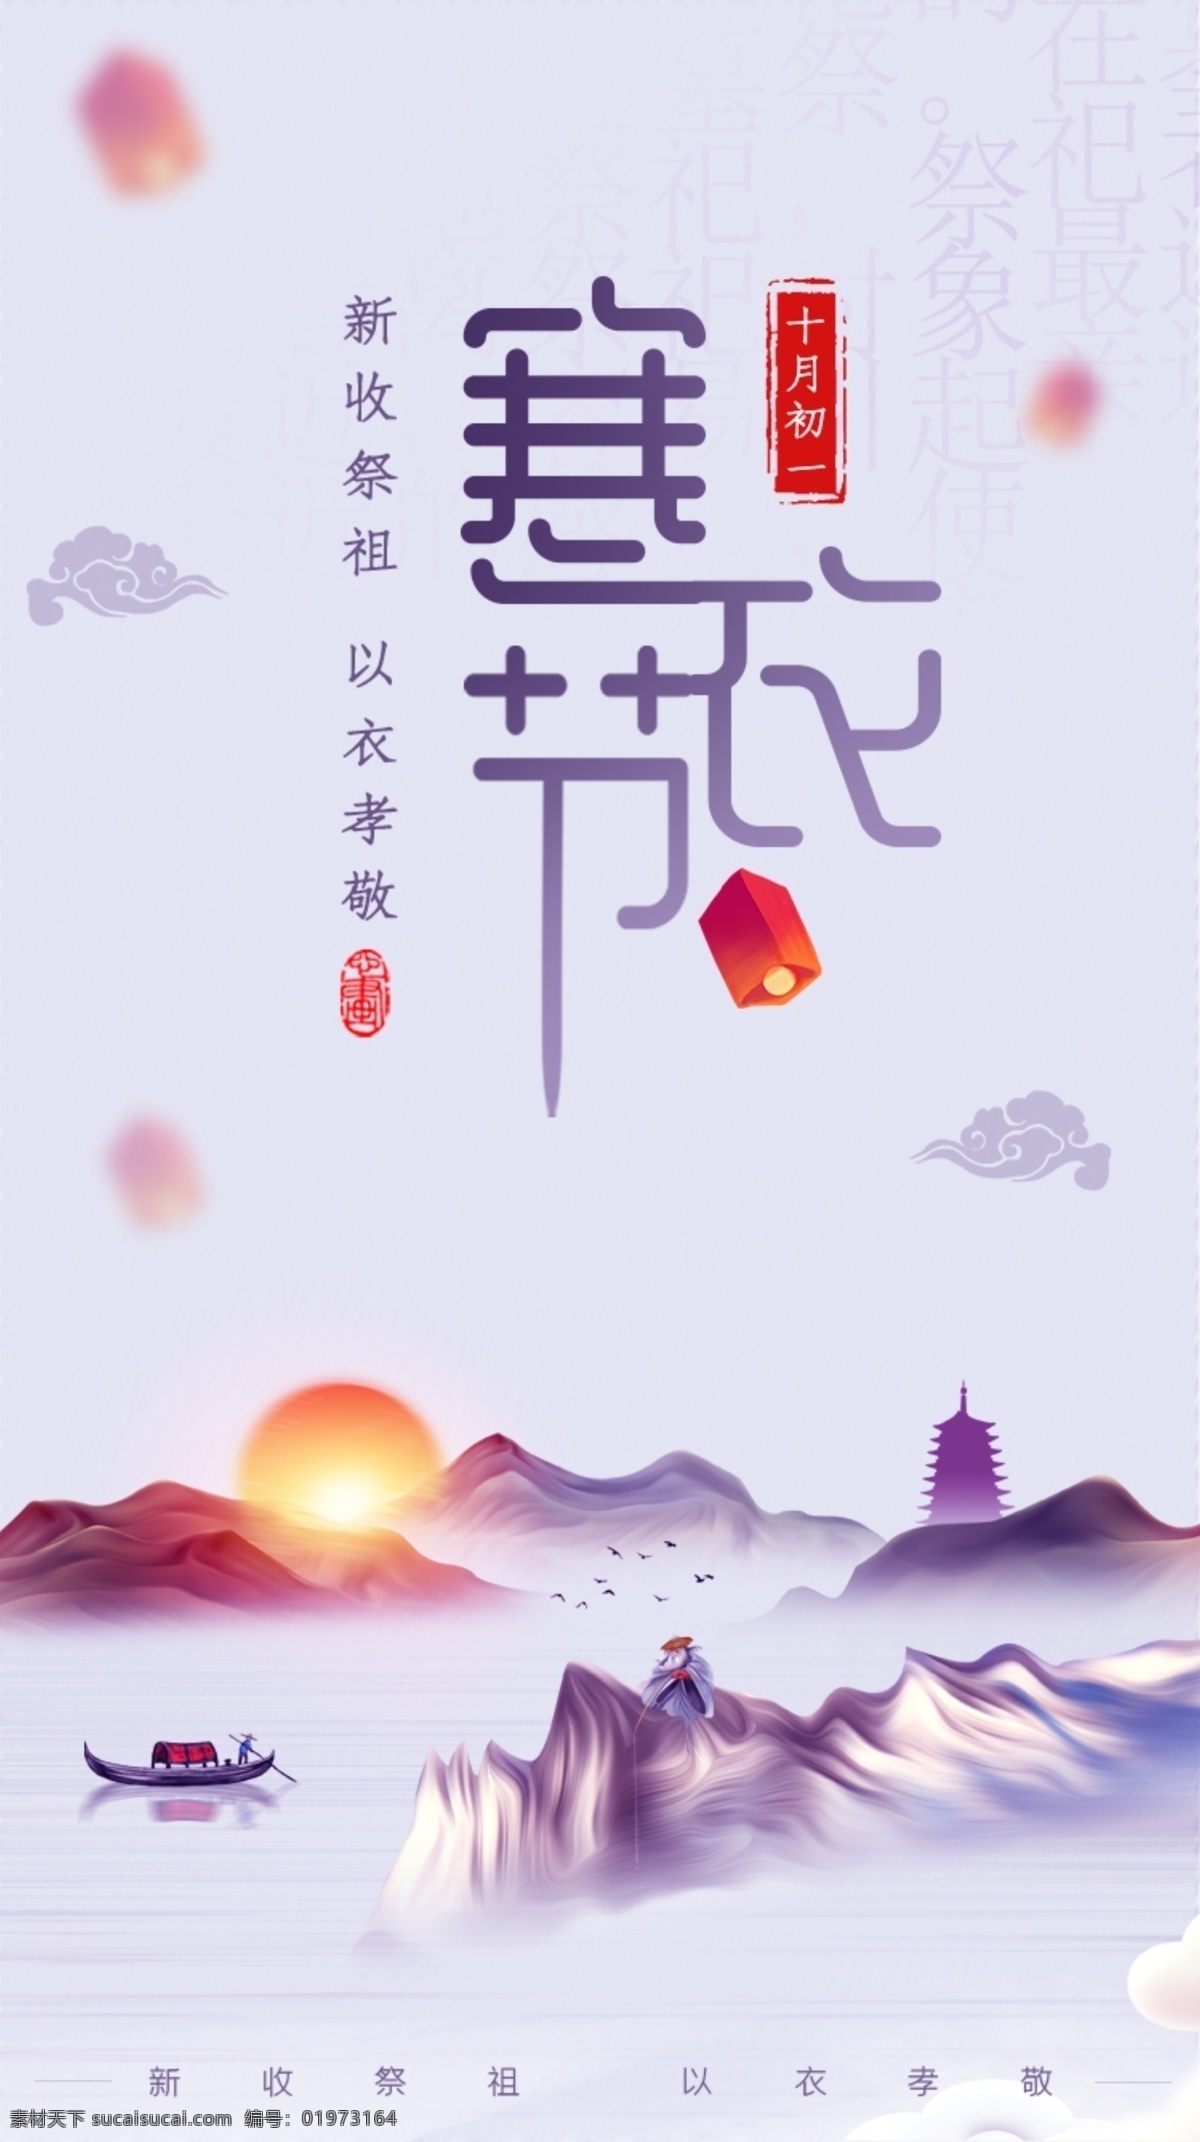 中国 二十四节气 寒衣 节 海报 启动 页 寒衣节 海 报 启动页 界面 移动界面设计 手机界面